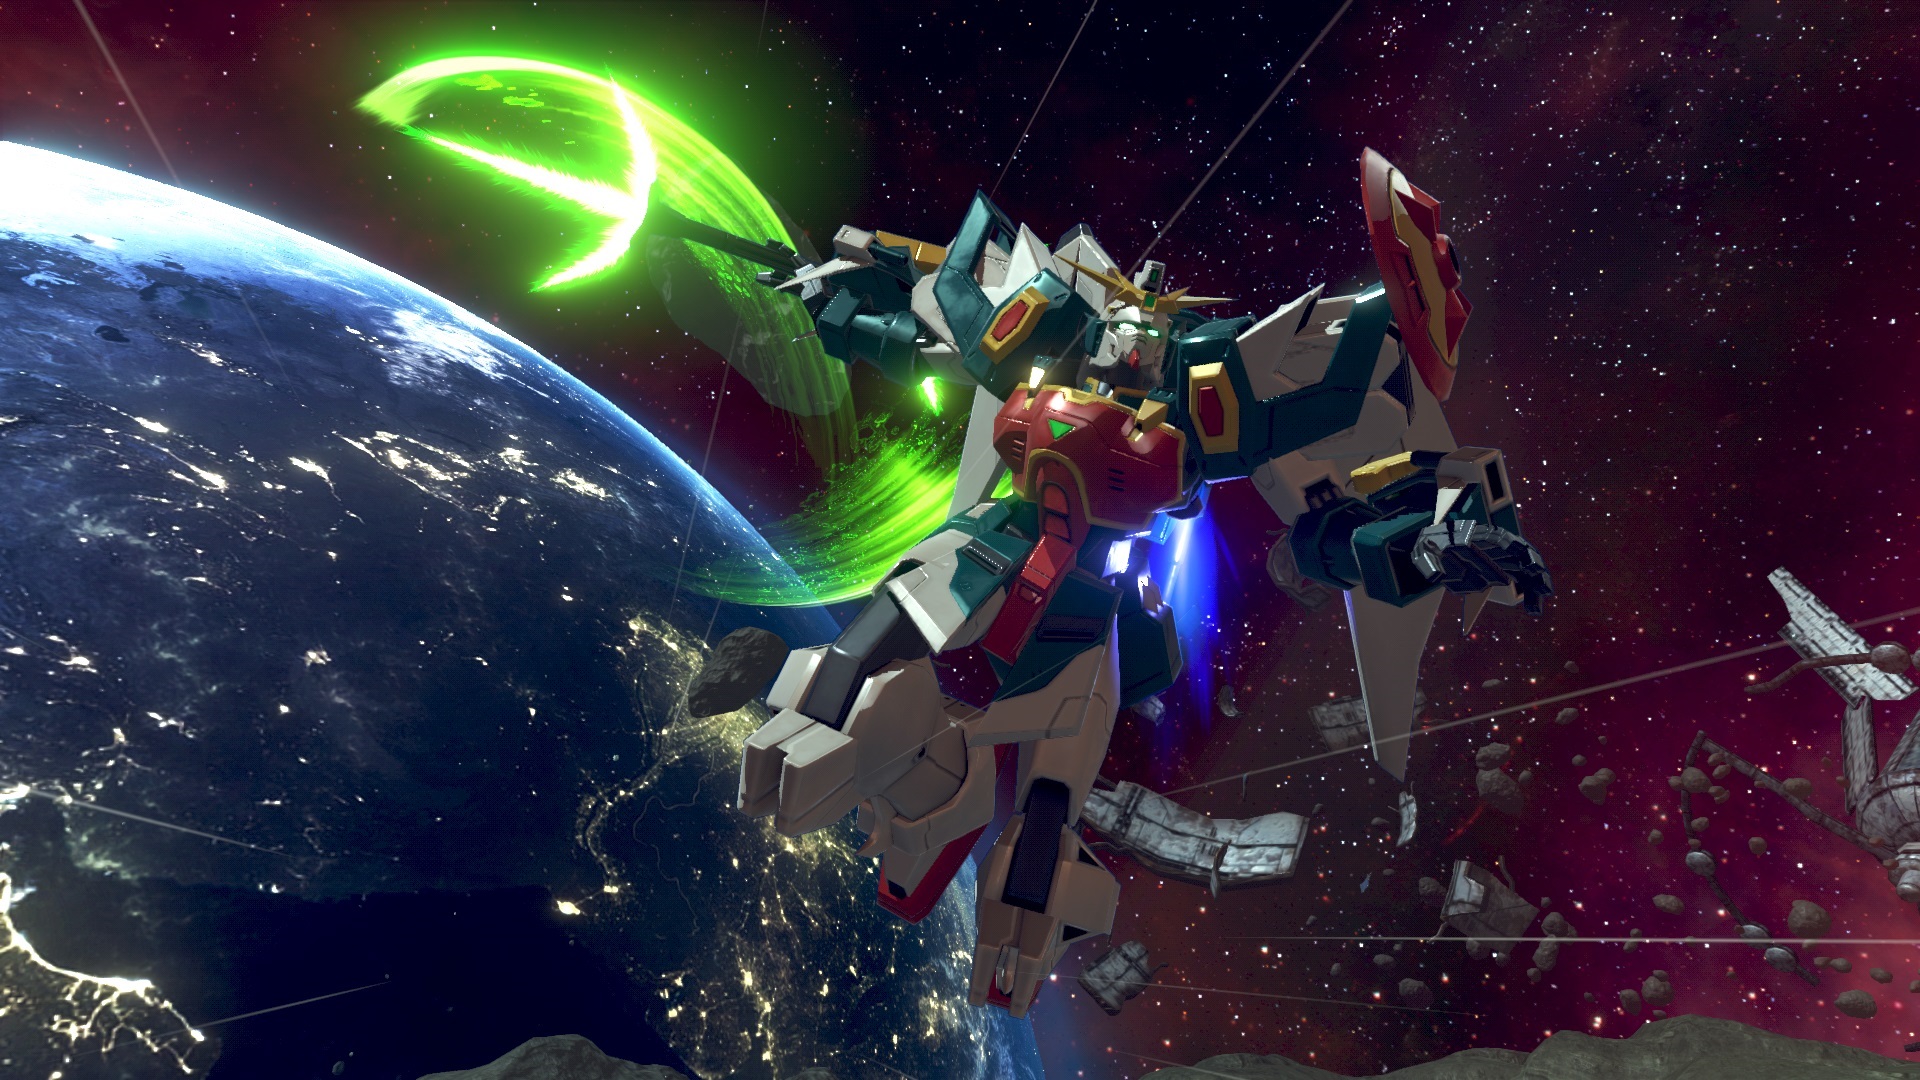 画像集 008 Ps4用 Gundam Versus Nガンダムやユニコーンガンダムなどが描かれた新たなキービジュアルが公開に アルトロンガンダム などの参戦機体も